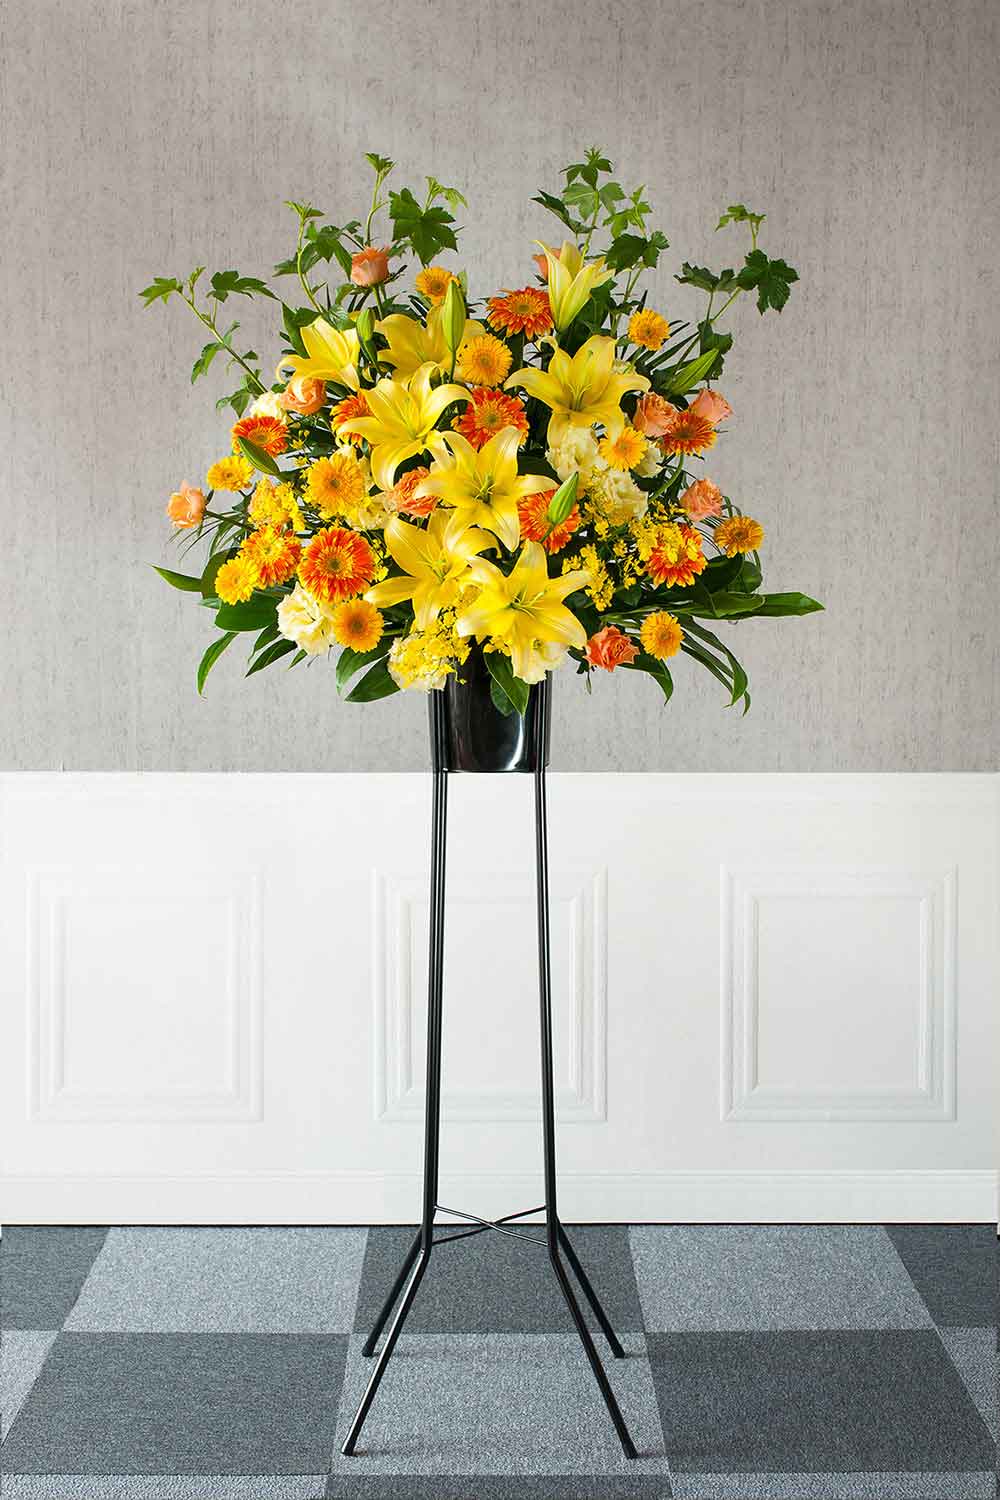 【スタンド花】1段スタンド デイリーイエロー(黄・橙) Sサイズ 高さ約180cm